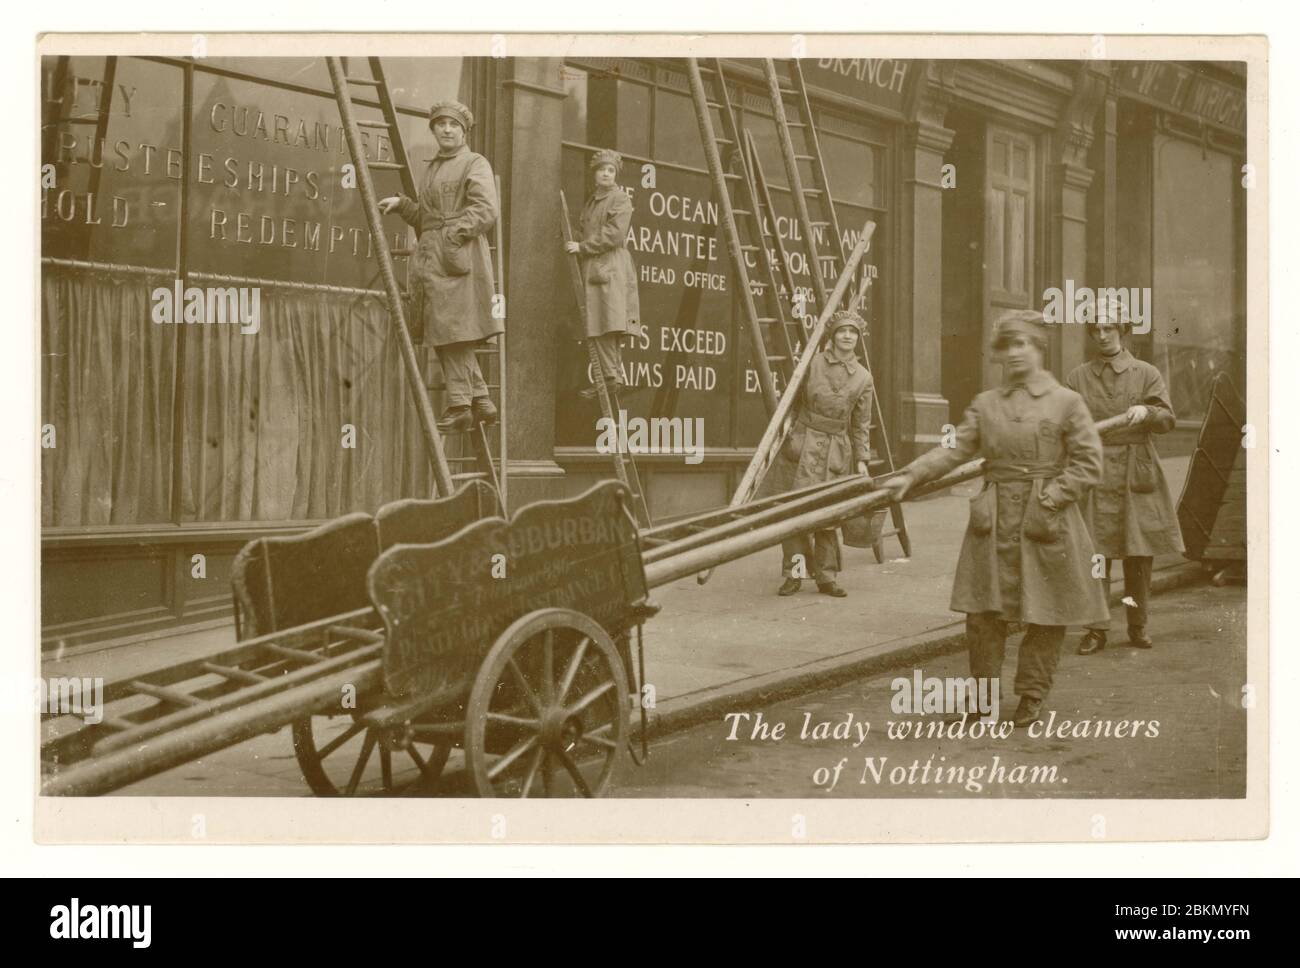 Carte postale de l'ère de la WW1 des femmes nettoyantes de fenêtre aidant l'effort de guerre, Nottingham, Angleterre, Royaume-Uni vers 1917 Banque D'Images